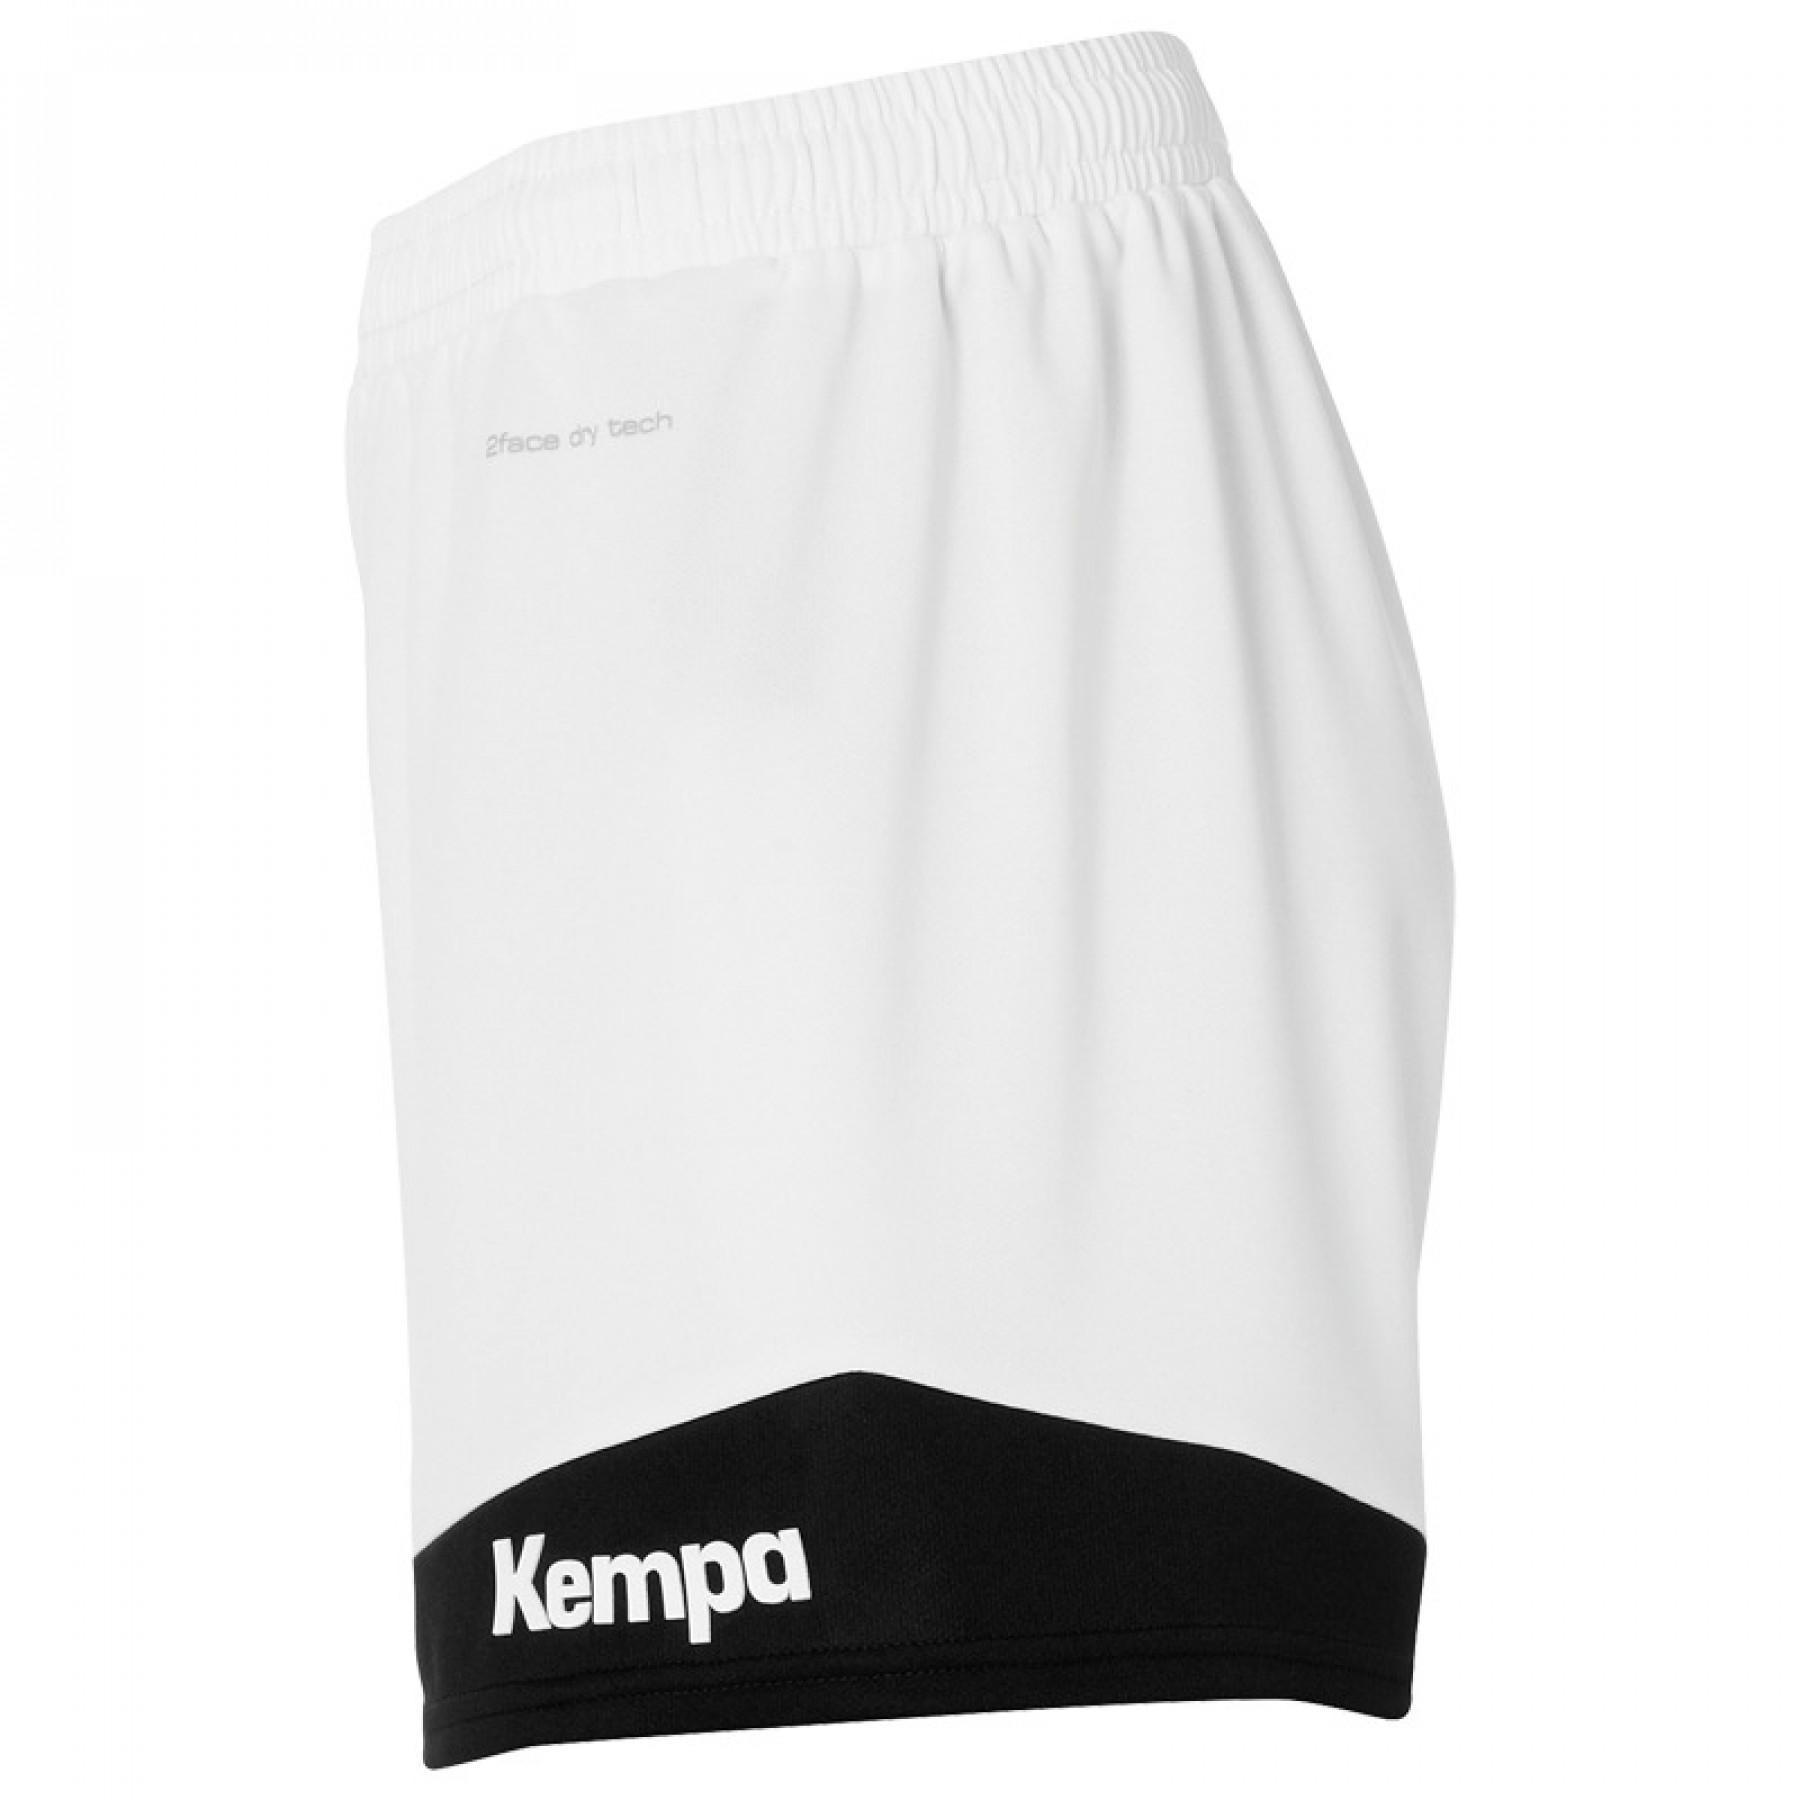 Shorts för kvinnor Kempa Emtoion 2.0